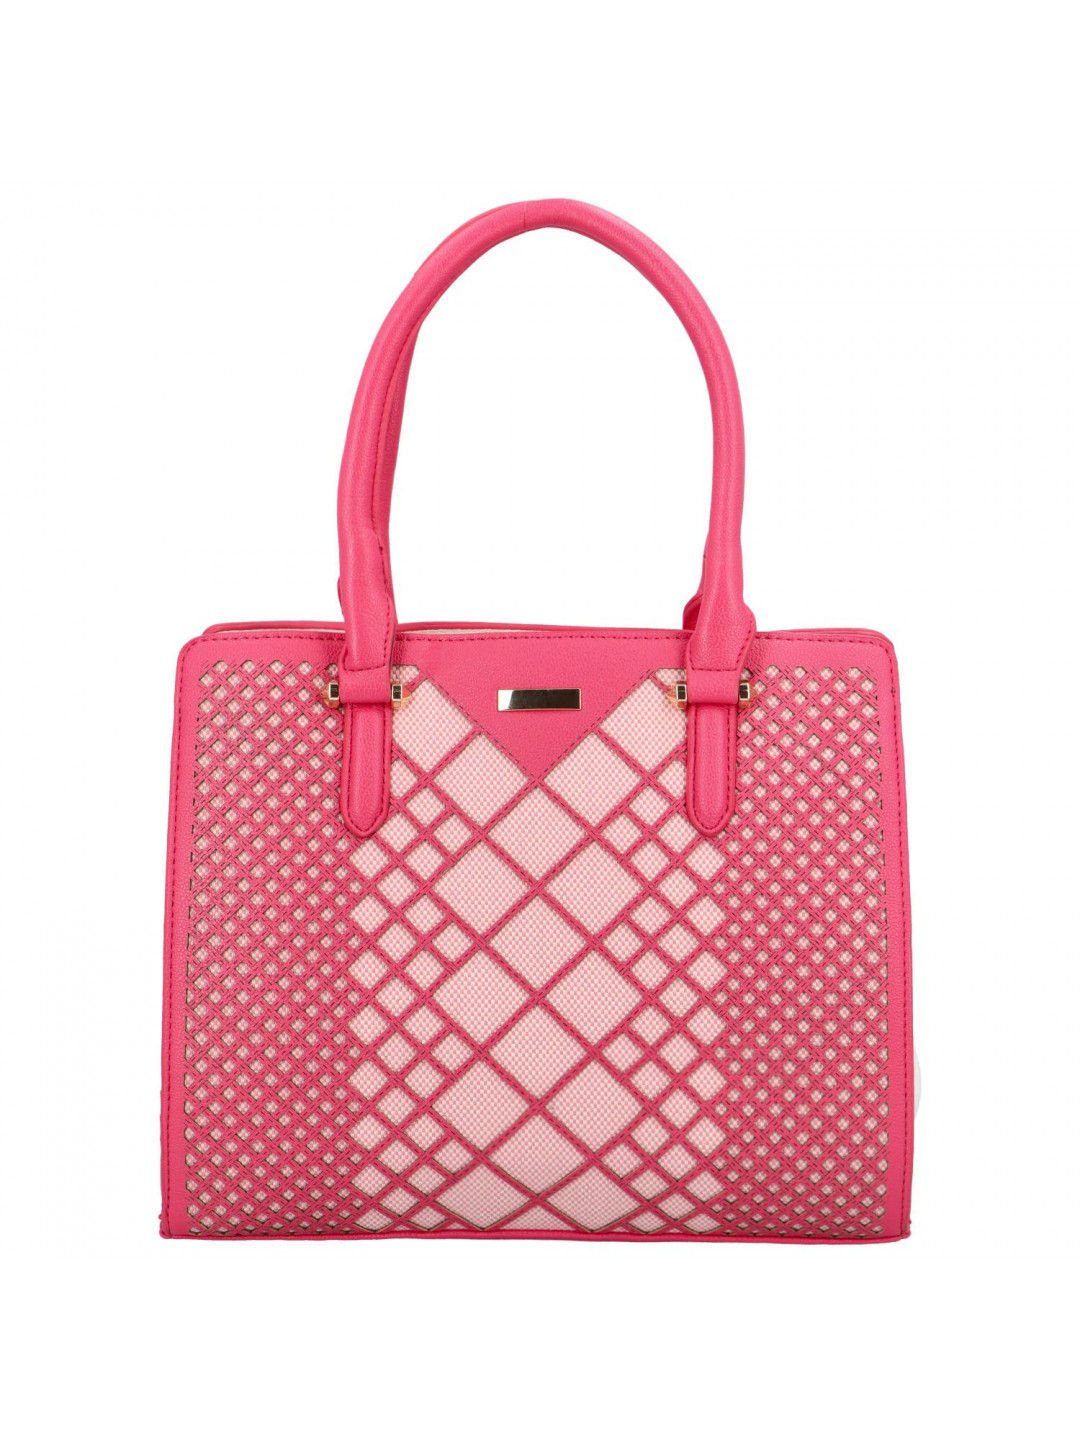 Dámská kabelka přes rameno sytě růžová – Maria C Remini